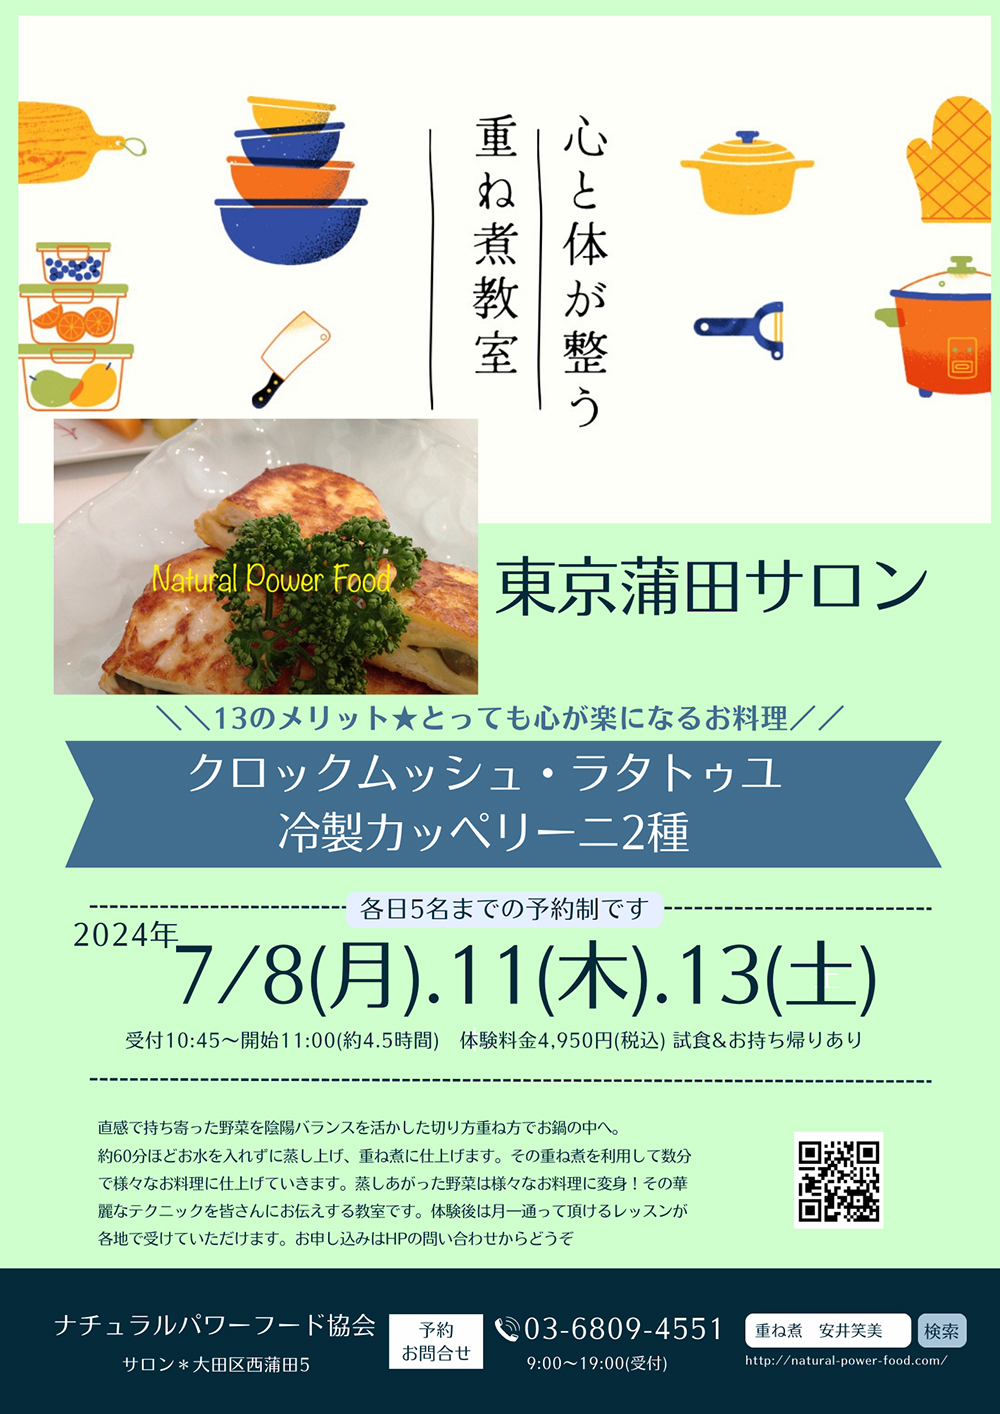 【7月8日 重ね煮・東京サロン】クロックムッシュ・ラタトゥユ・冷製カッペリーニ2種